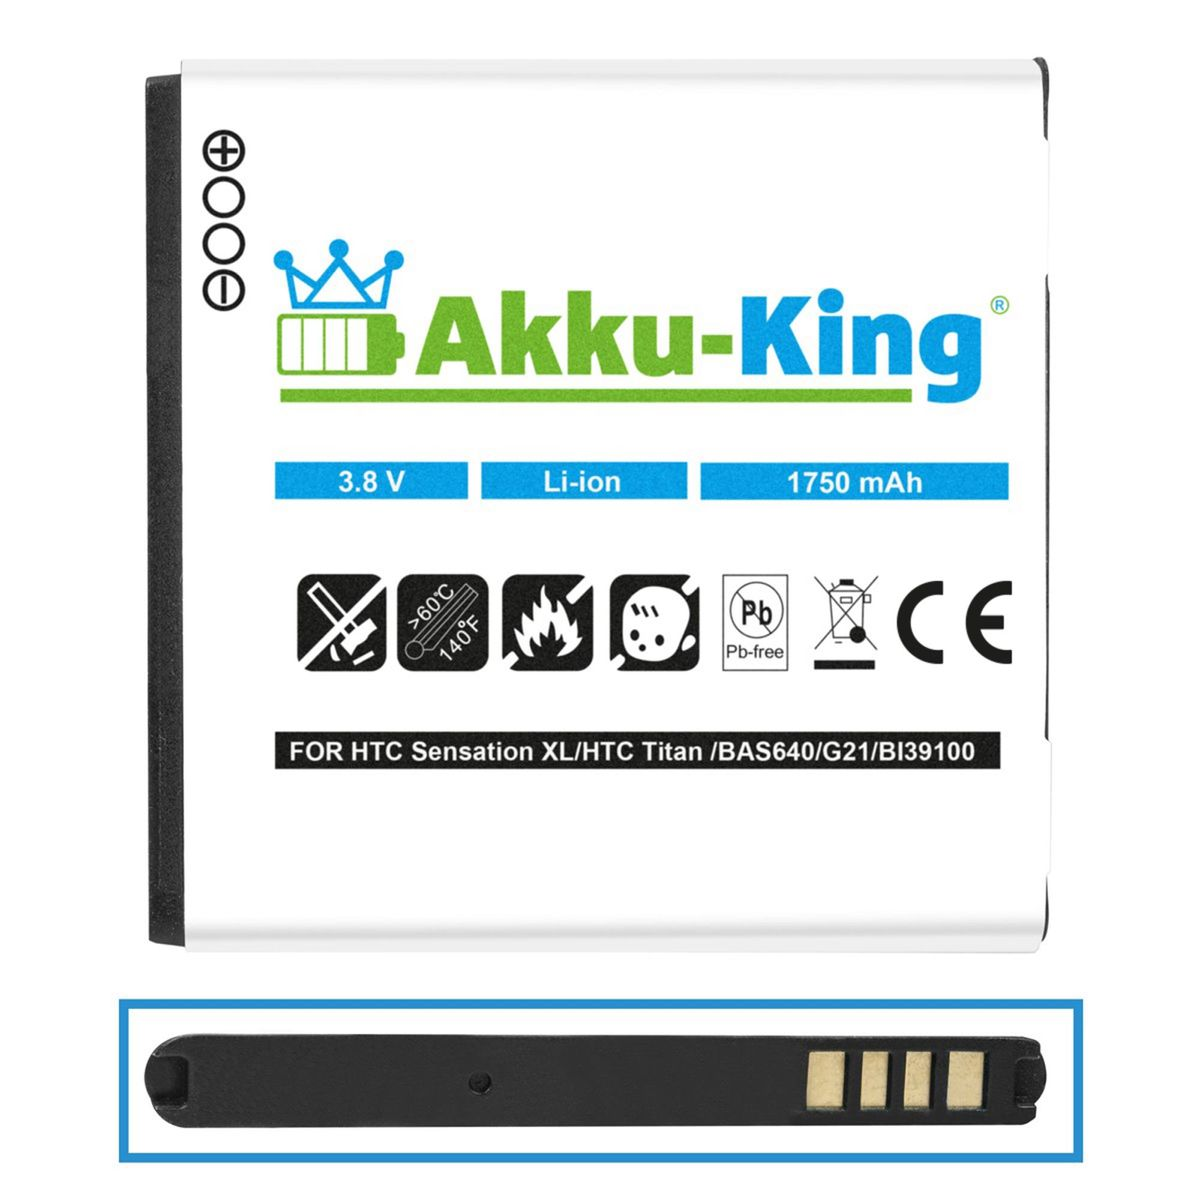 BA Akku kompatibel HTC Volt, 1750mAh mit 3.8 S640 AKKU-KING Li-Ion Handy-Akku,